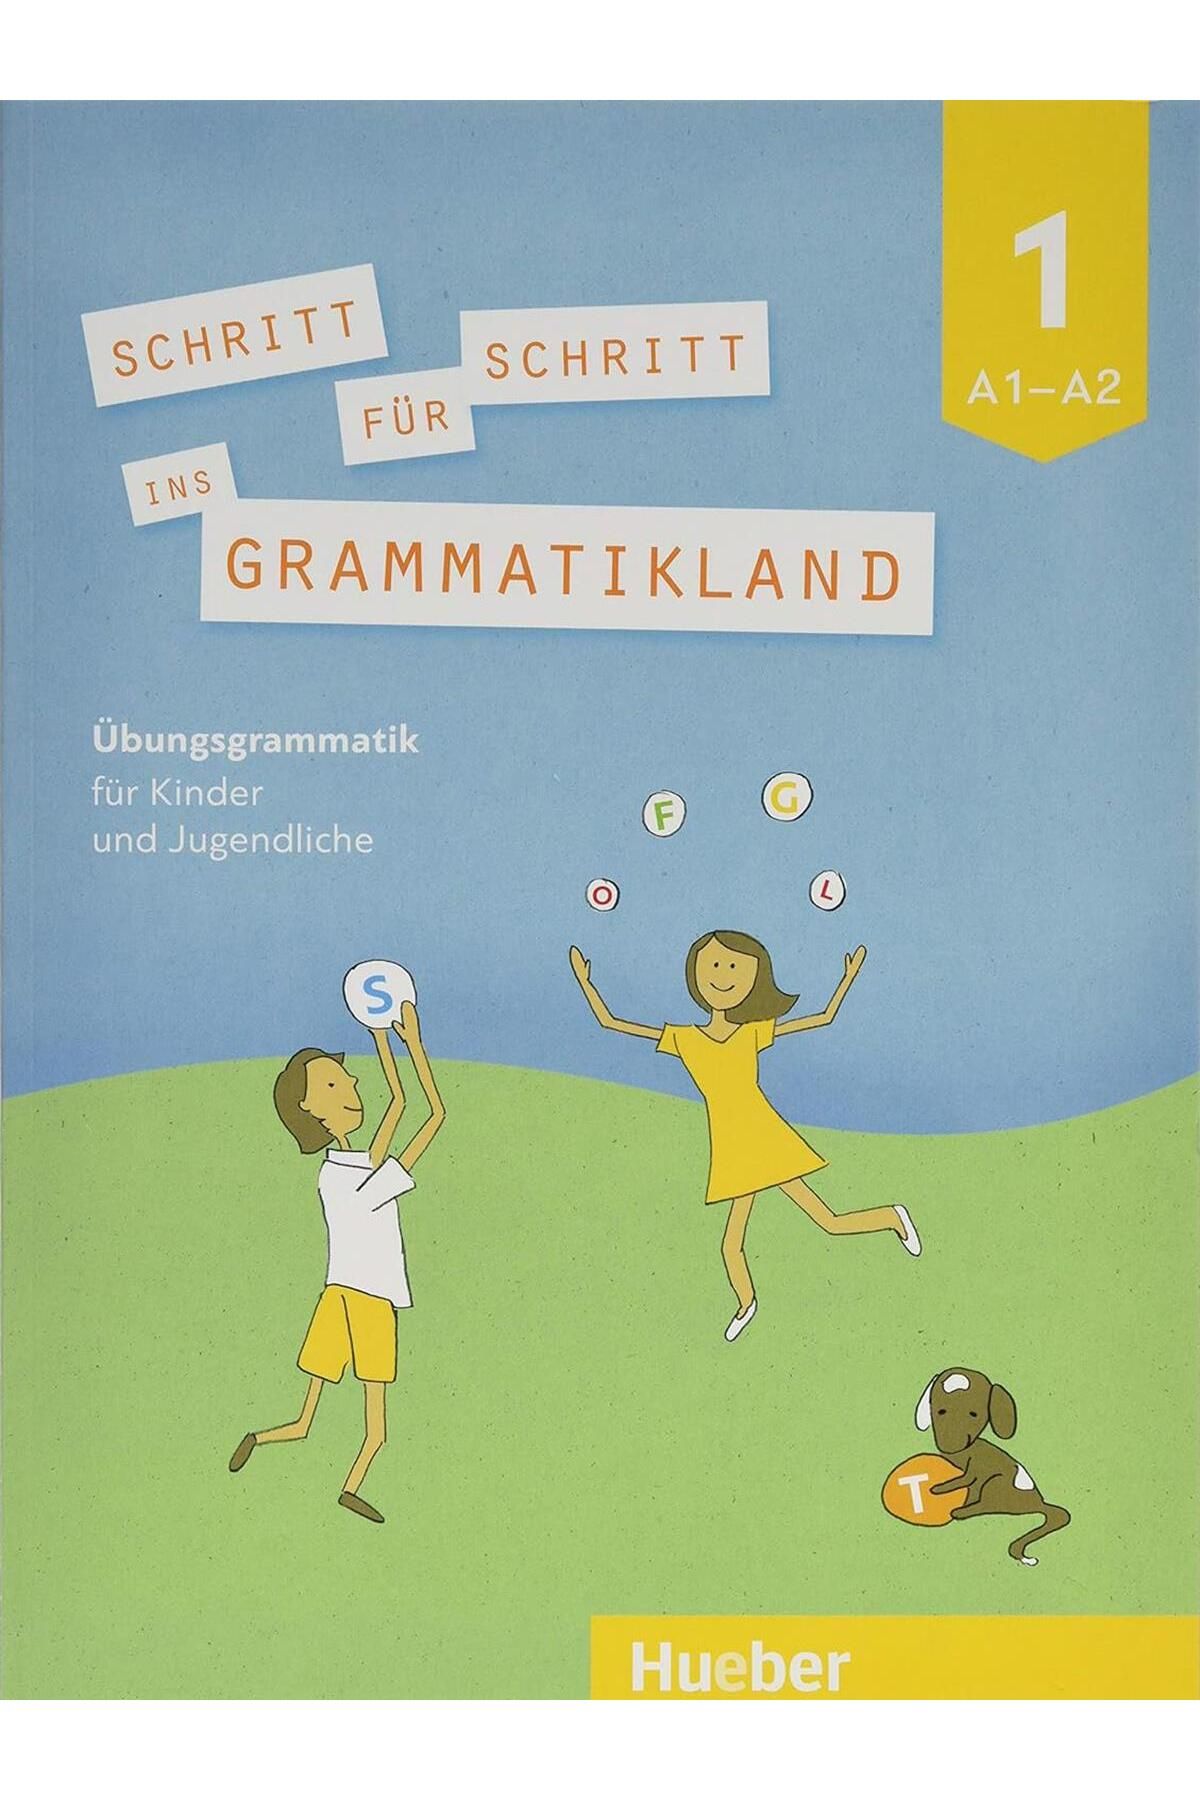 Hueber Yayınları Schritt für Schritt ins Grammatikland 1: Übungsgrammatik für Kinder und Jugendliche